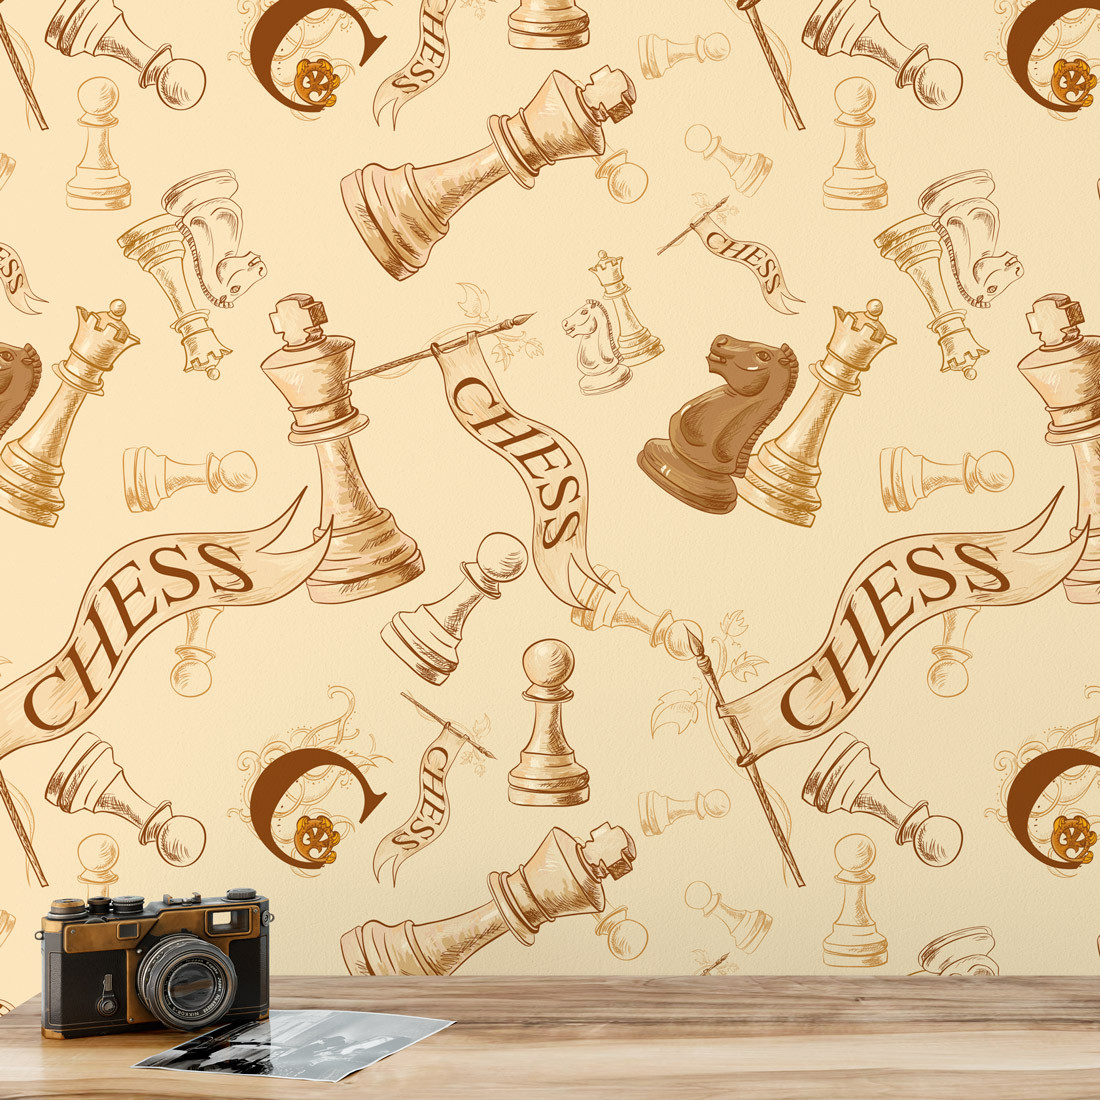 Um fundo amarelo acentua a presença das peças de xadrez e do tabuleiro  vertical mobile wallpaper